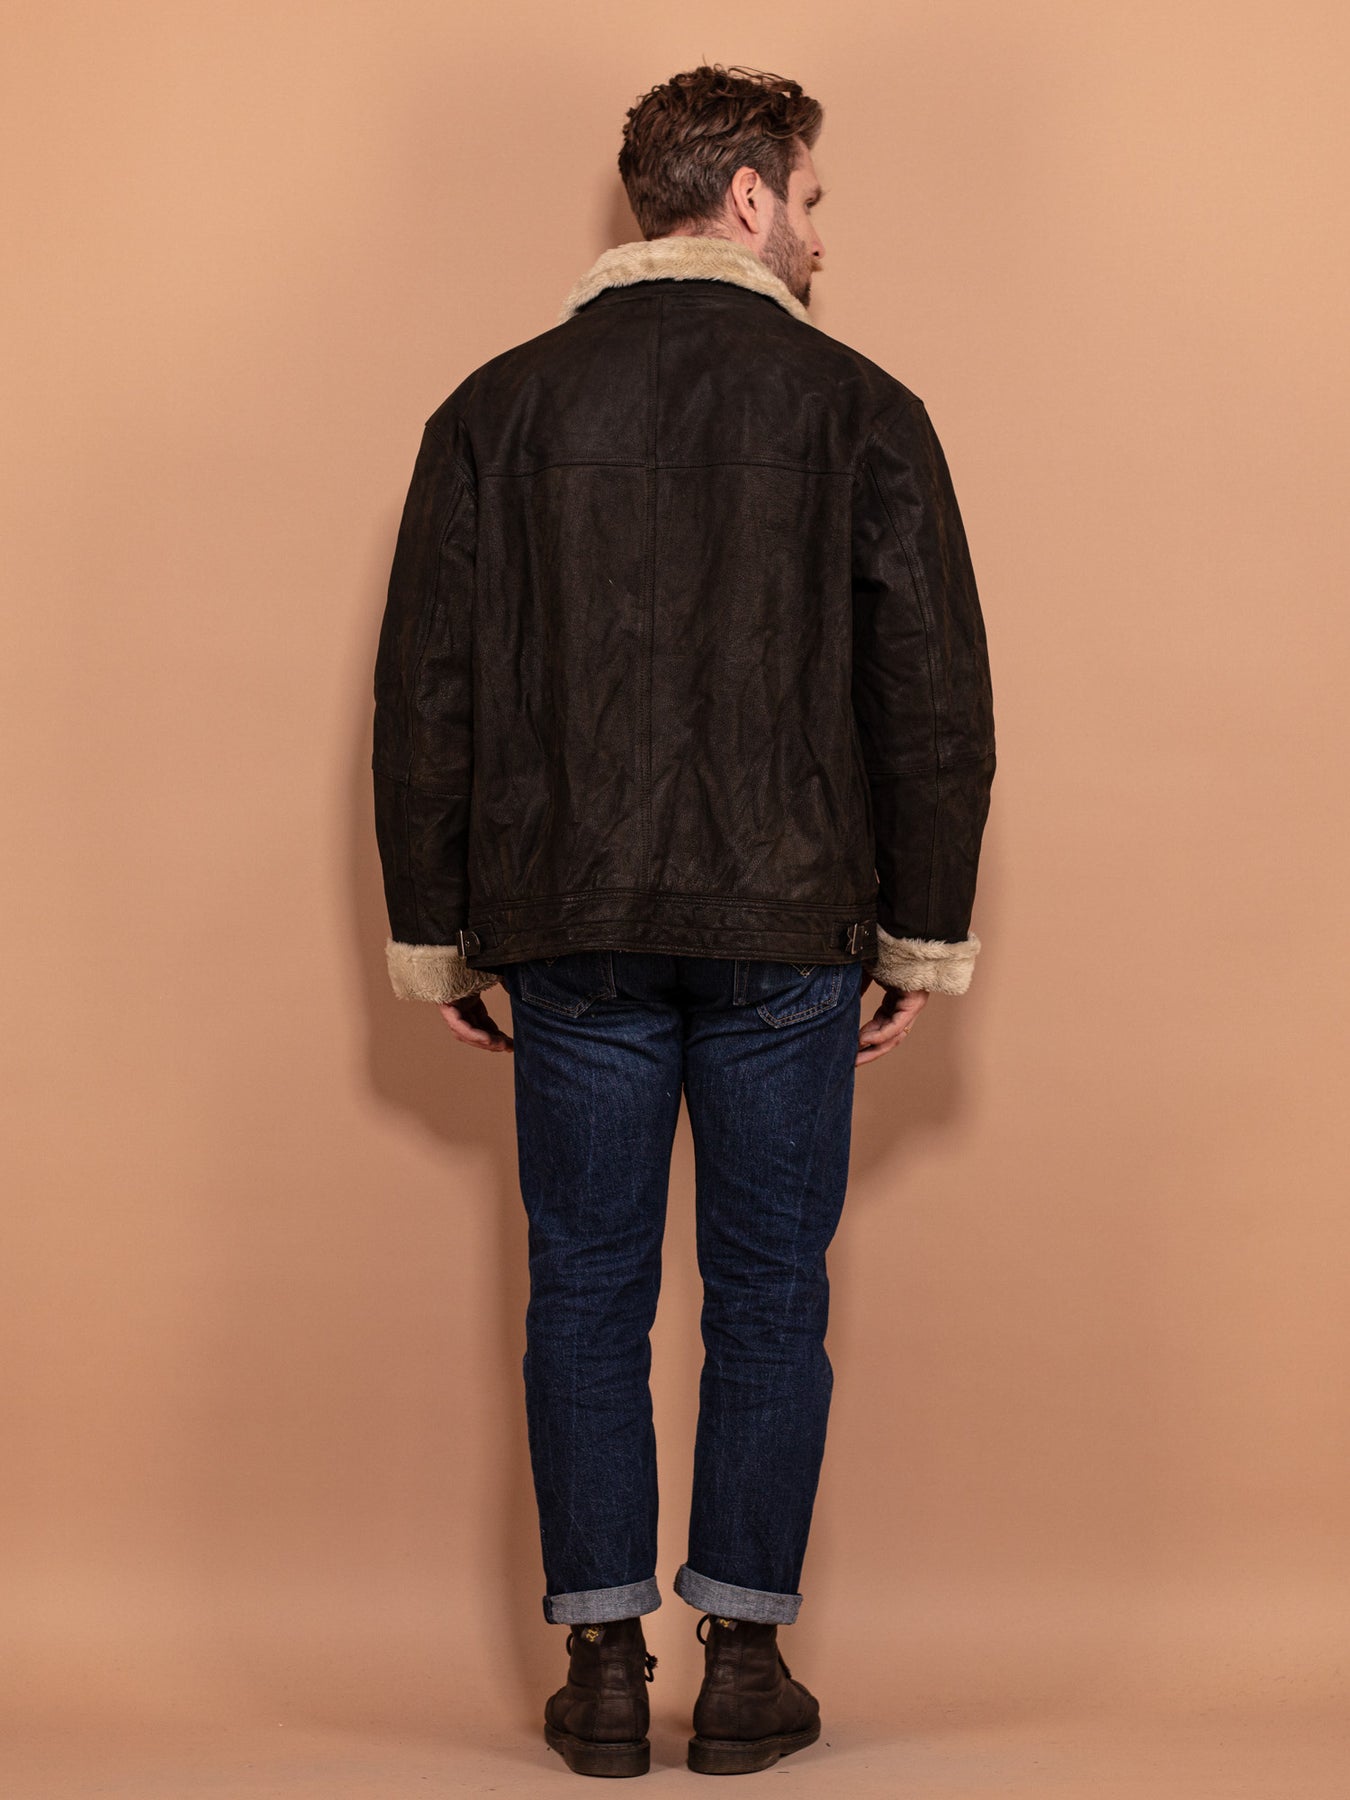 https://northerngrip.com/cdn/shop/files/vintage-90s-men-faux-fur-lined-leather-jacket-black-xxl_3_1800x1800.jpg?v=1707461102